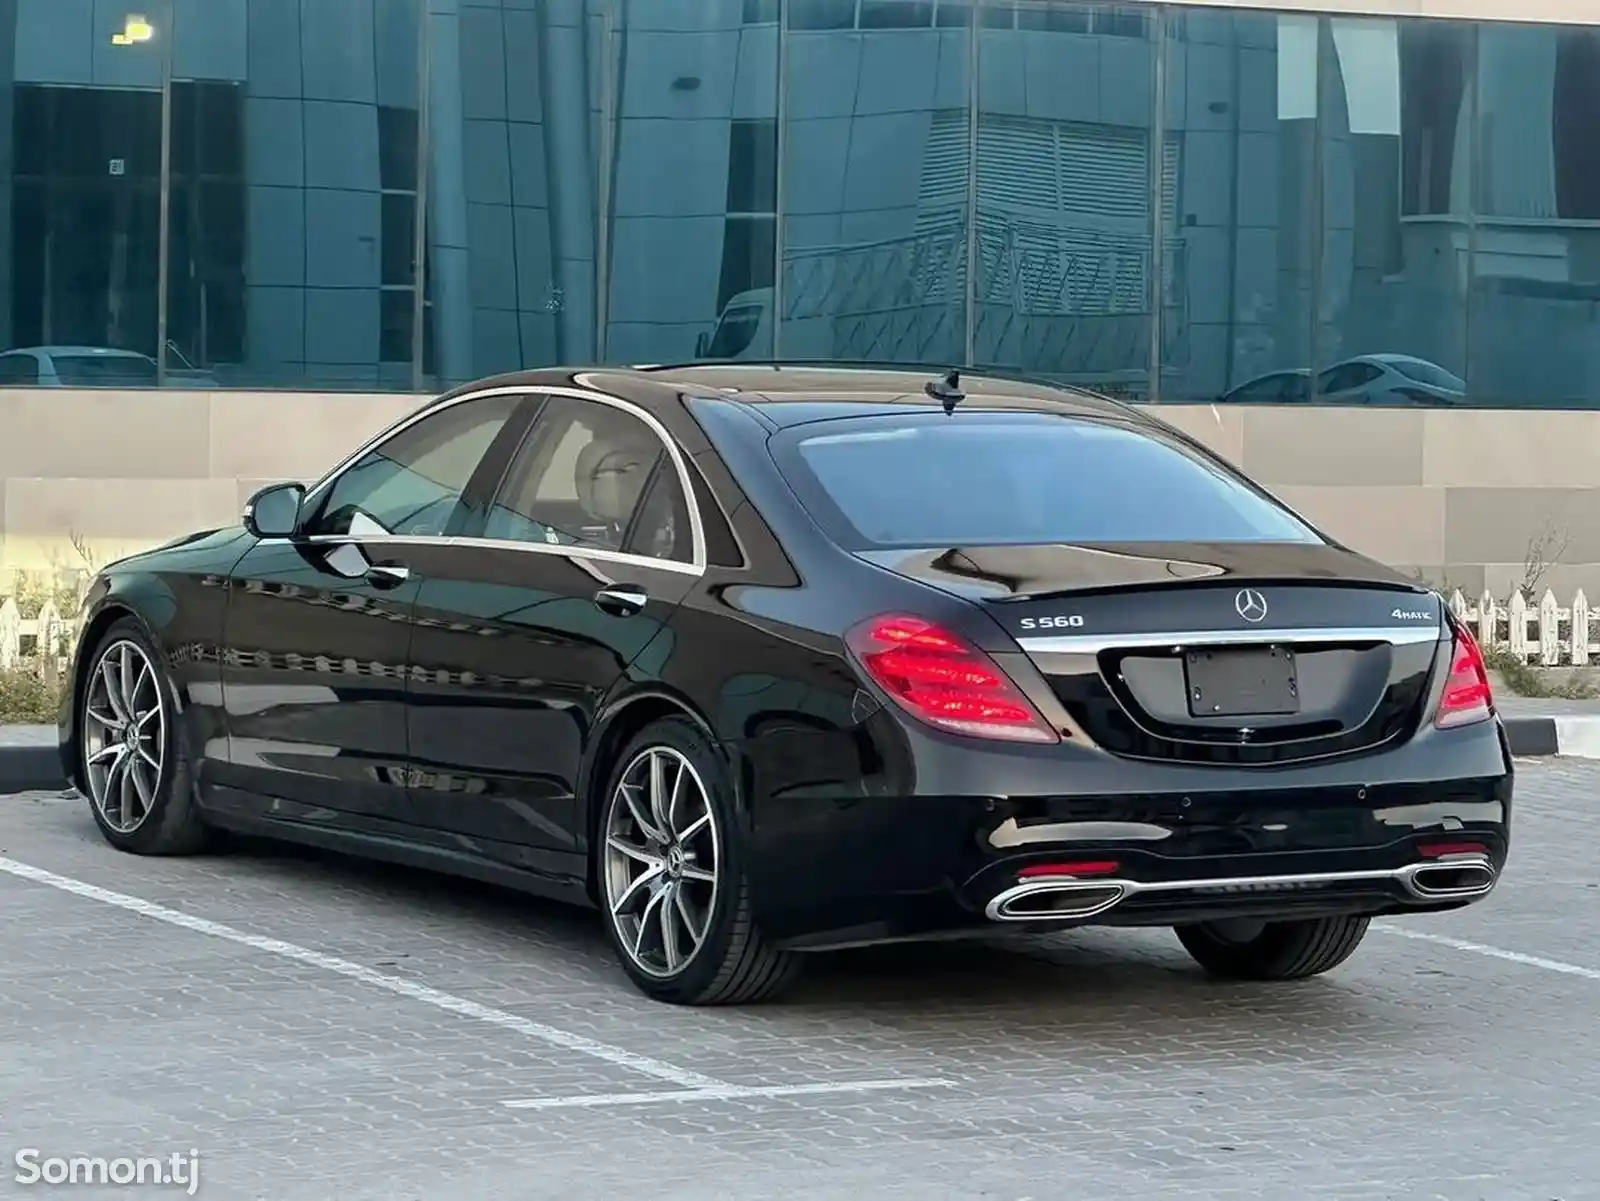 Mercedes-Benz S class, 2020-10